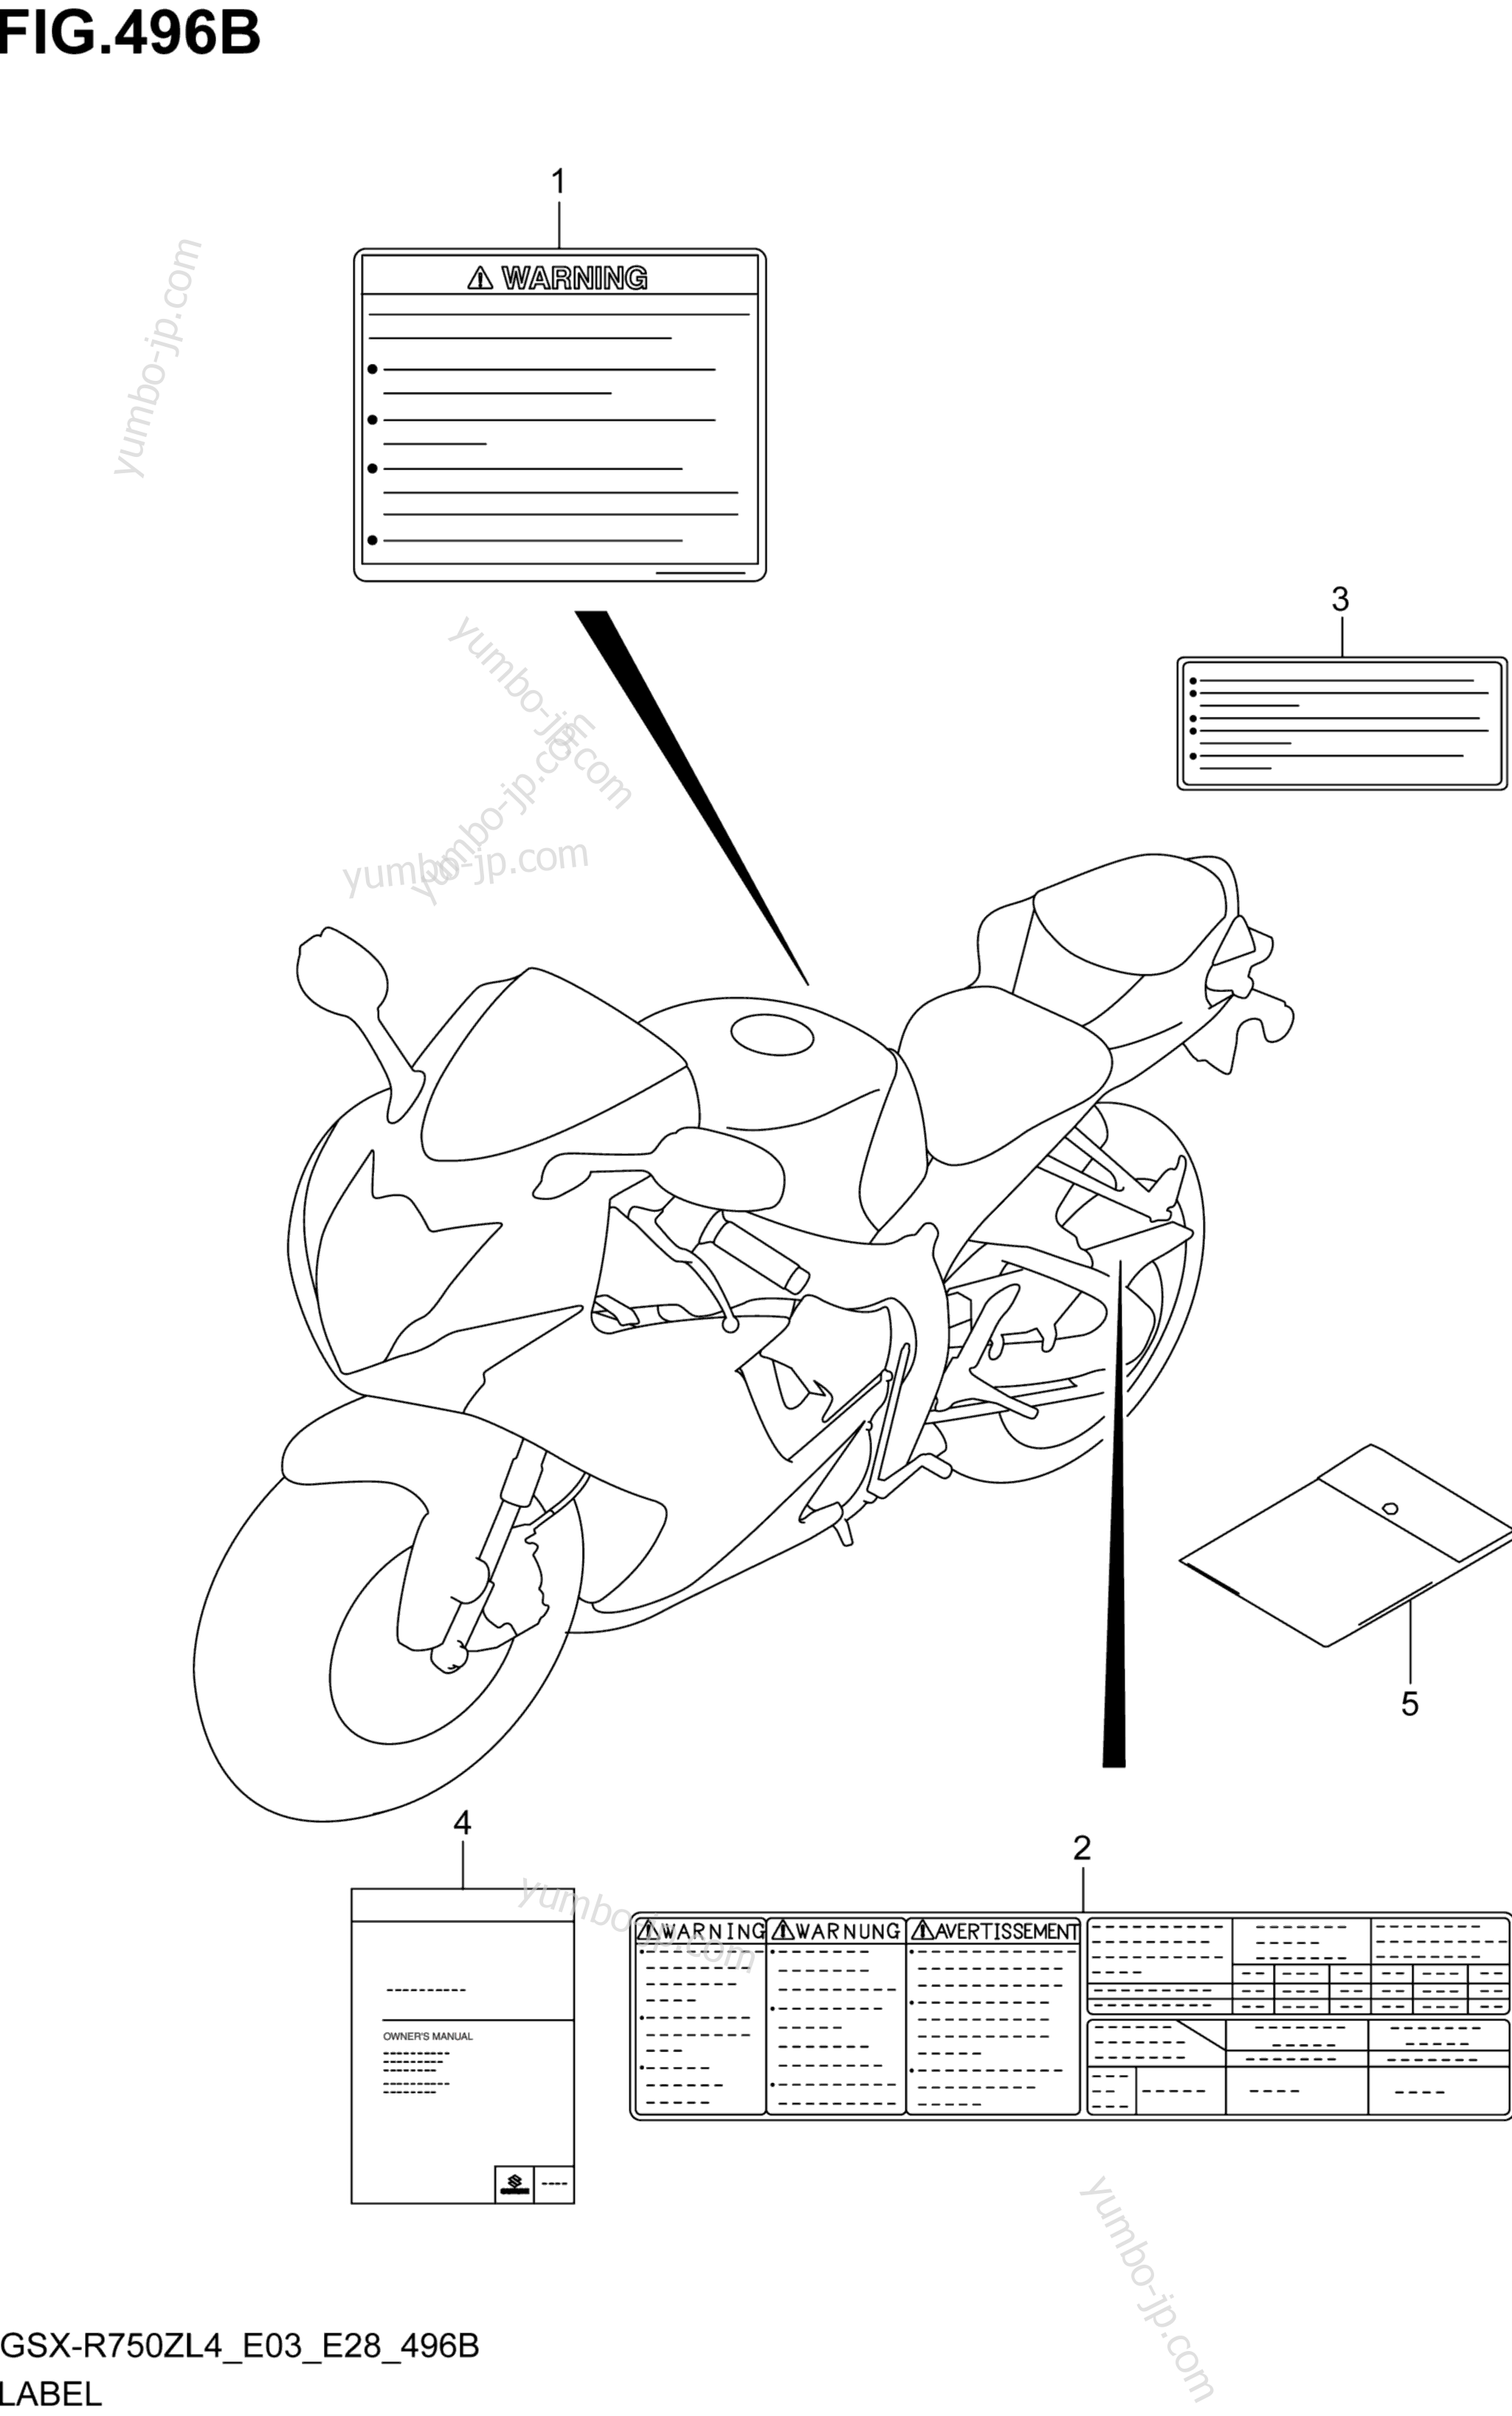 LABEL (GSX-R750ZL4 E28) for motorcycles SUZUKI GSX-R750Z 2014 year